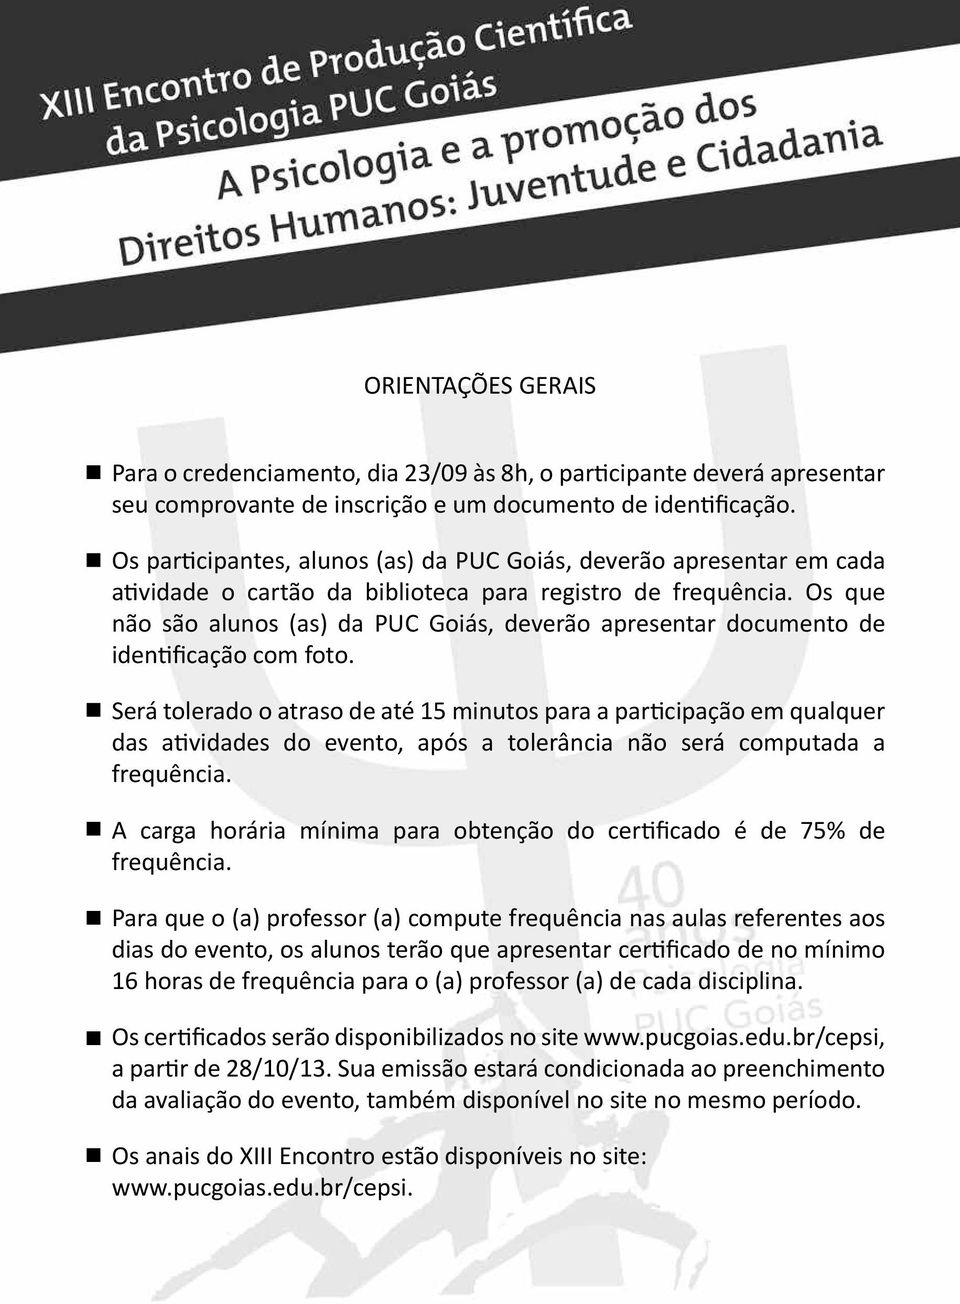 Os que não são alunos (as) da PUC Goiás, deverão apresentar documento de identificação com foto.